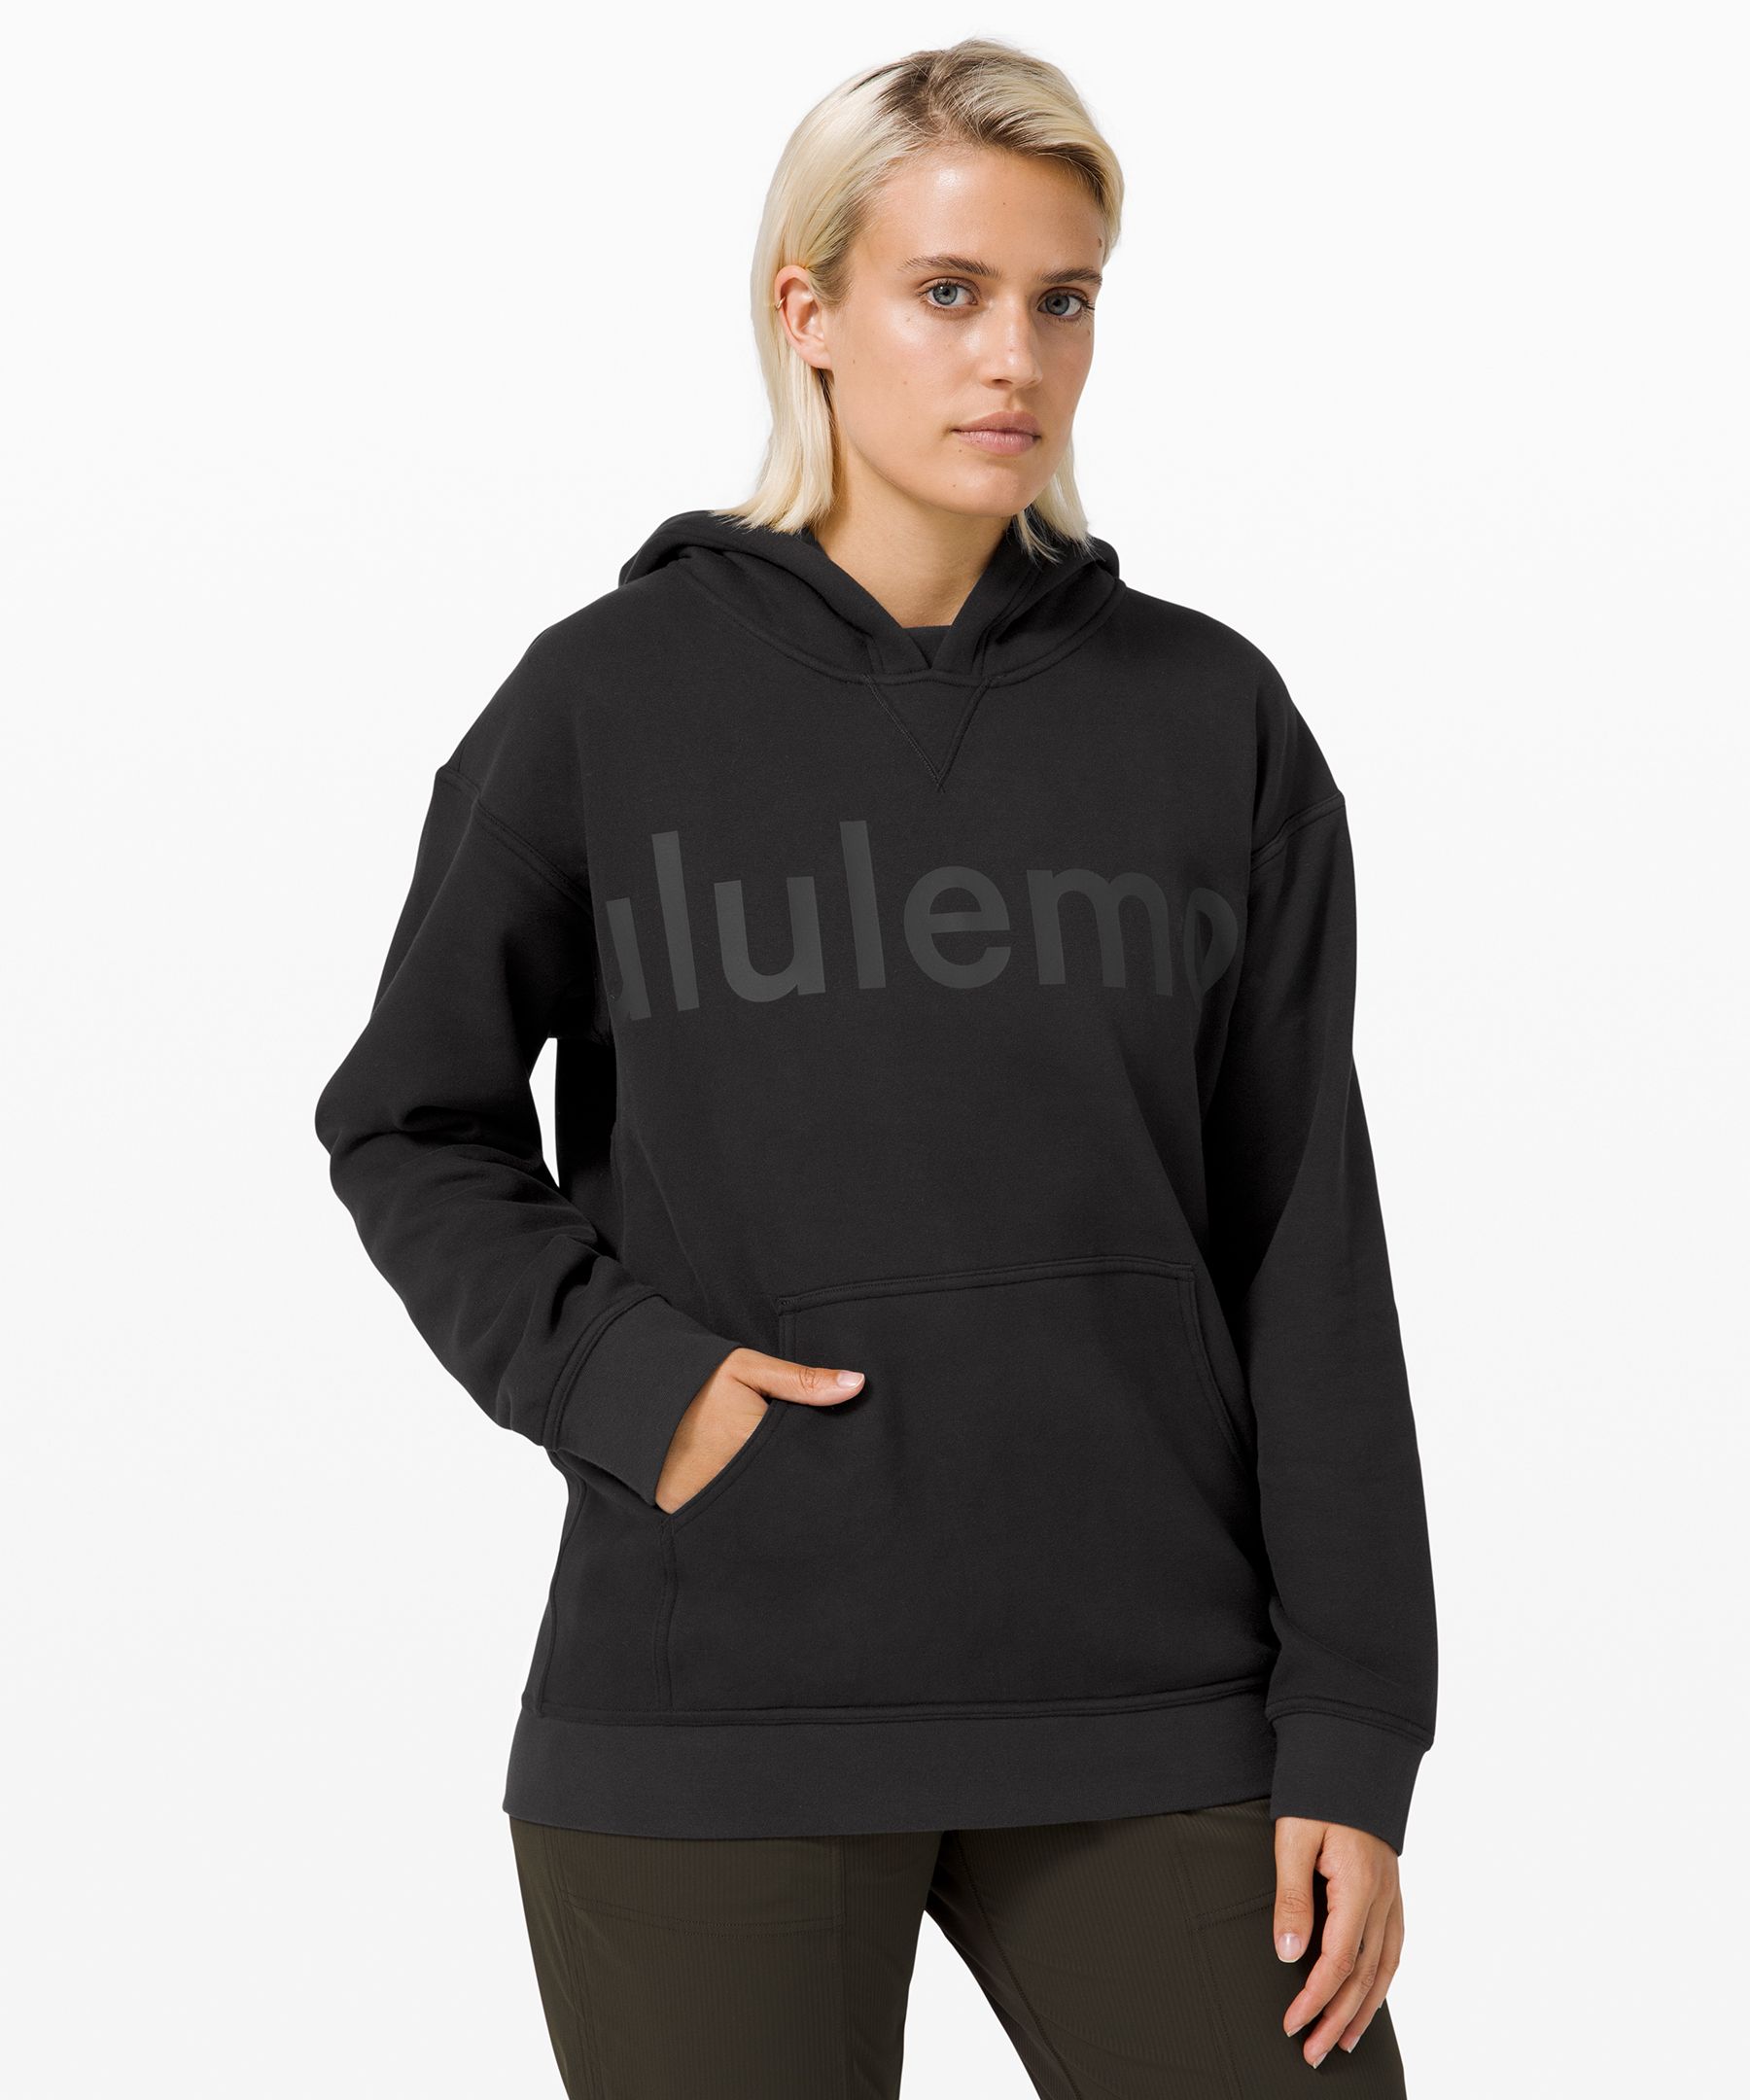 lululemon pullover hoodie women's